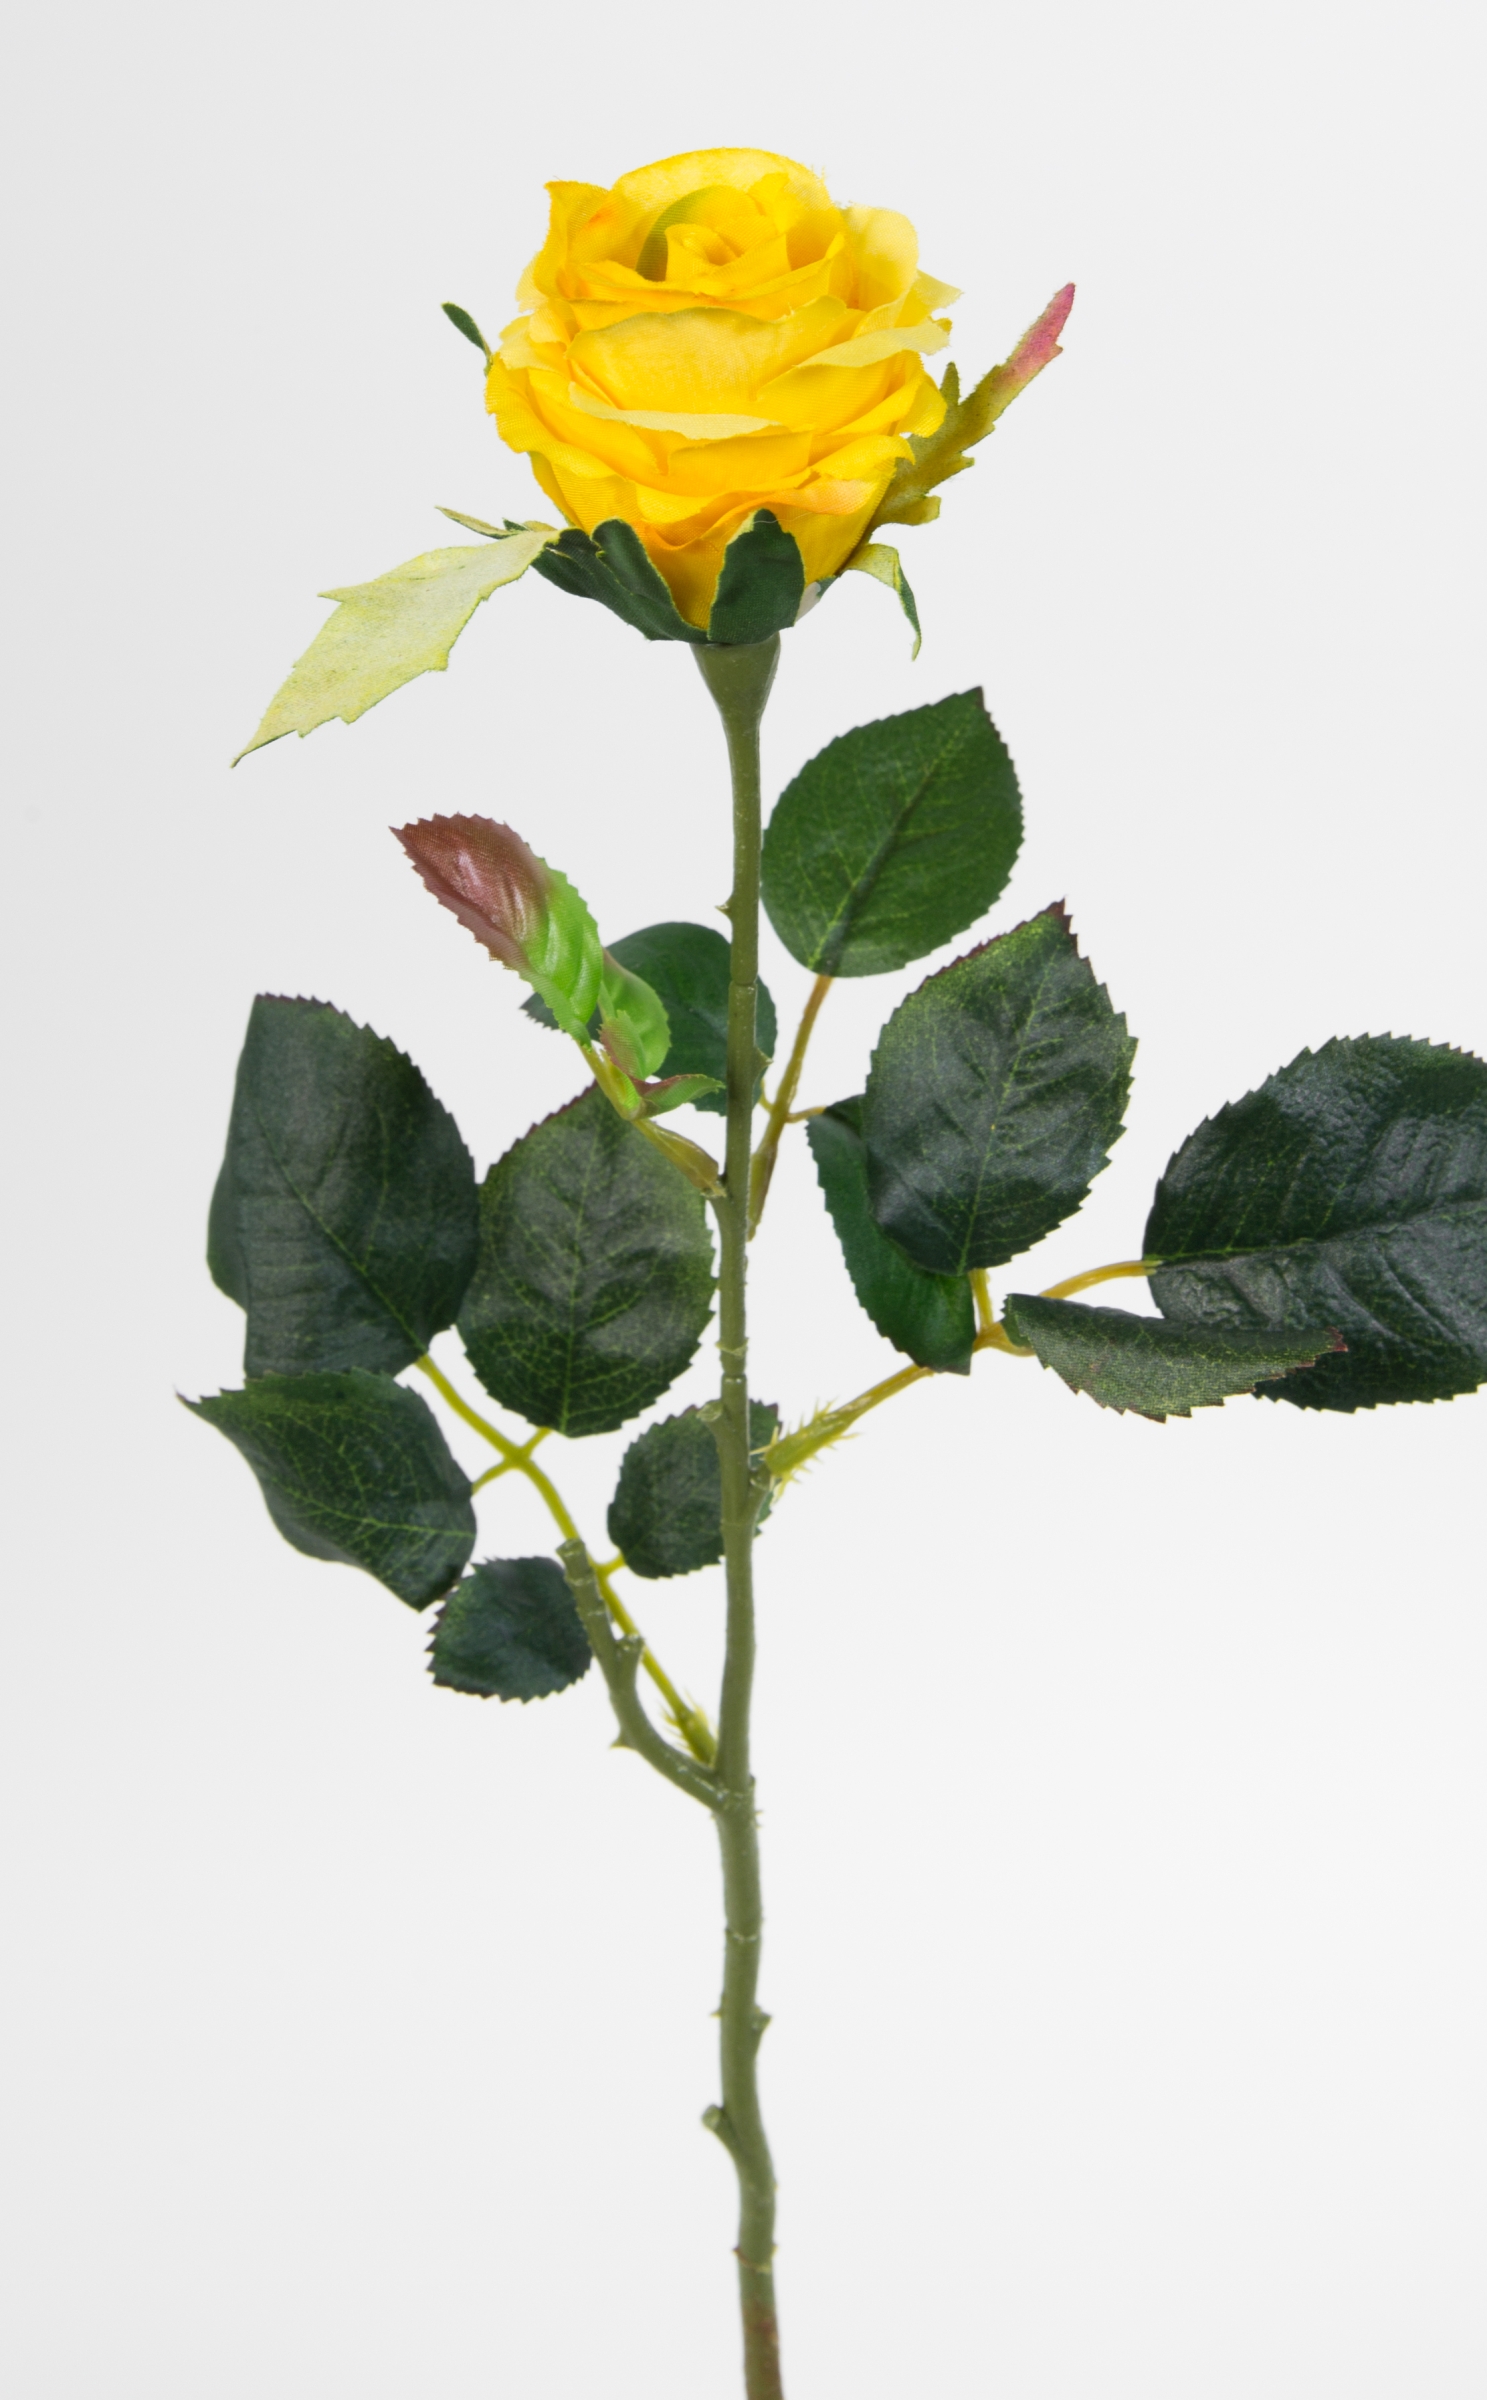 12 Stück Rose Elena 45cm gelb PM Seidenblumen Kunstblumen künstliche Blumen Rosen